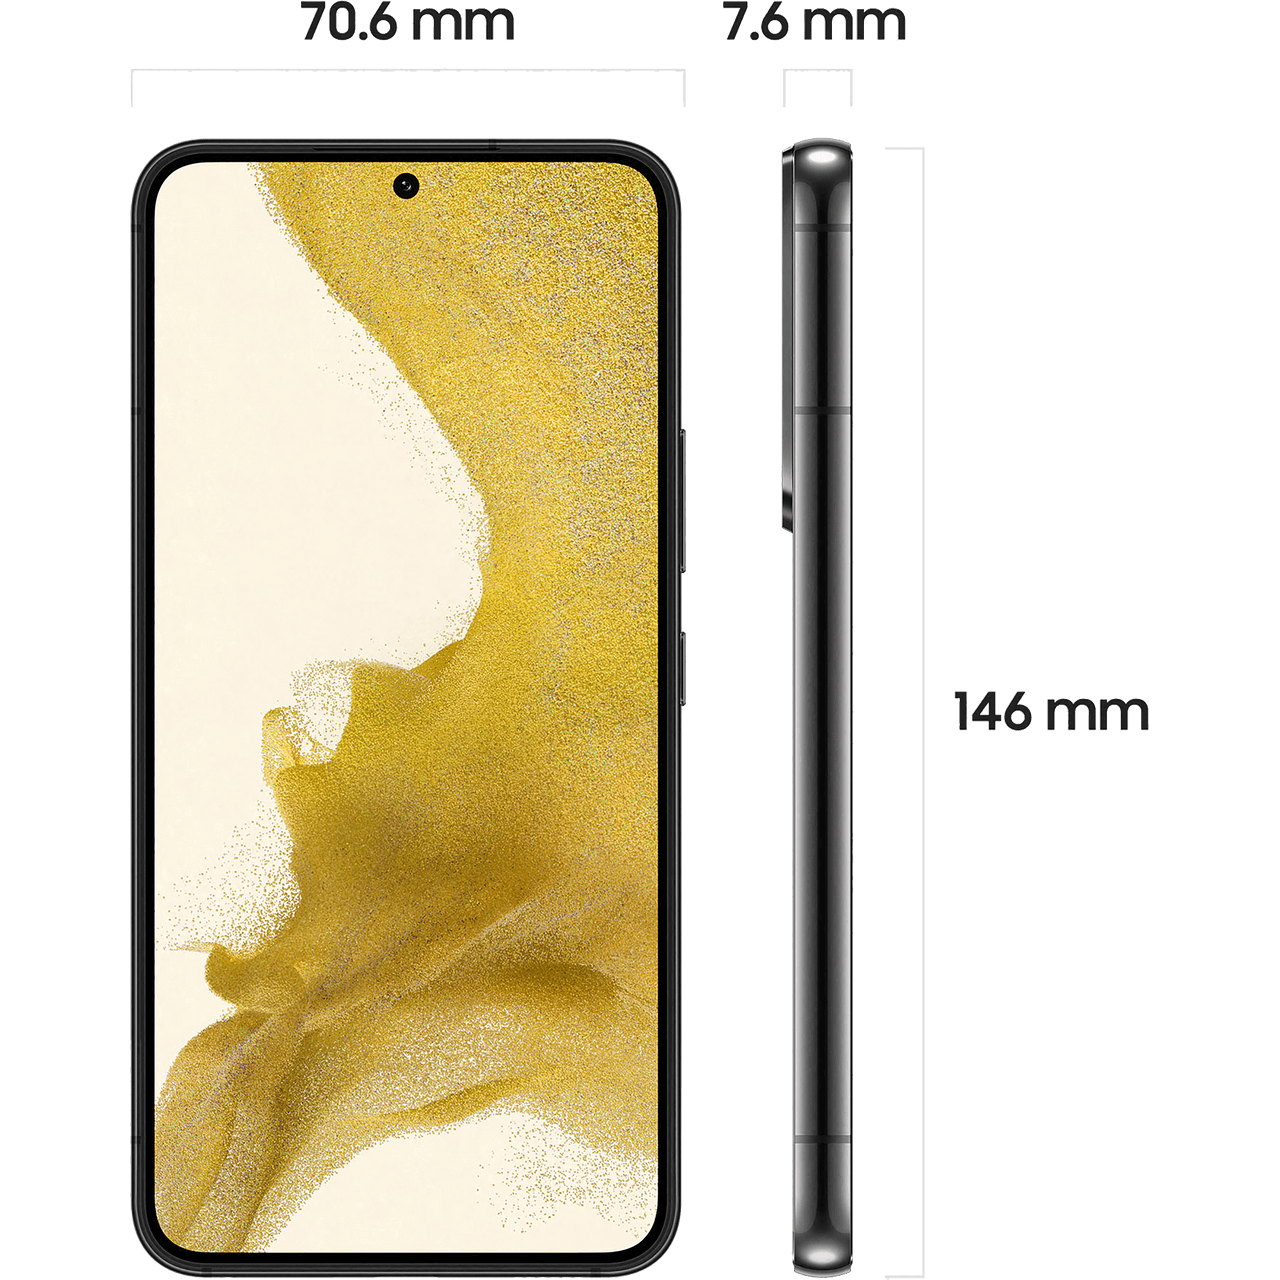 SM-S901BZKDEUB | Samsung Galaxy S22 Phone | Phantom Black | ao.com